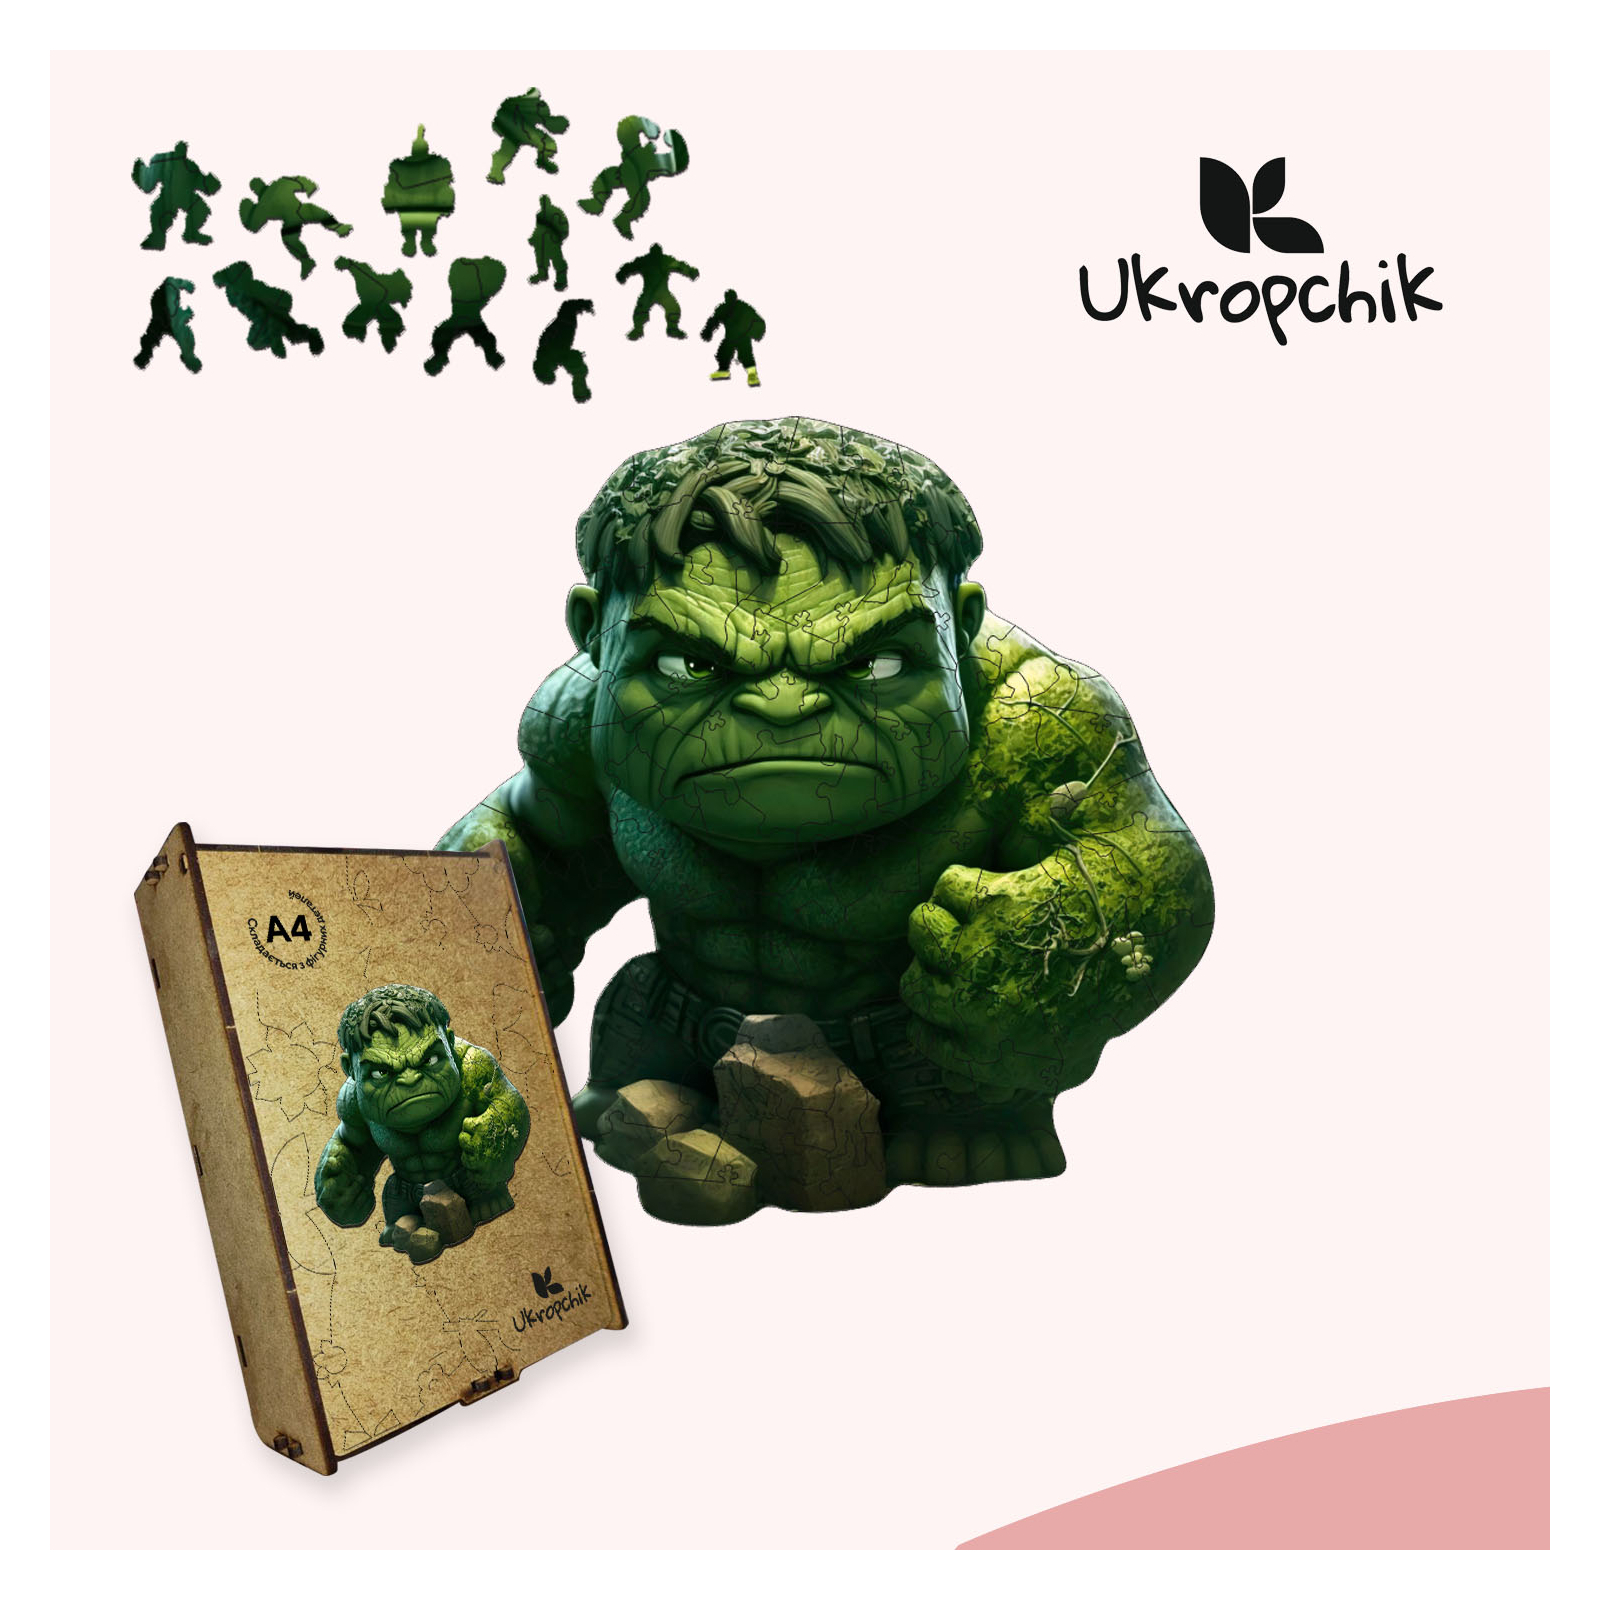 Пазл Ukropchik дерев'яний Супергерой Халк size - L в коробці з набором-рамкою (Hulk Superhero A3) зображення 5